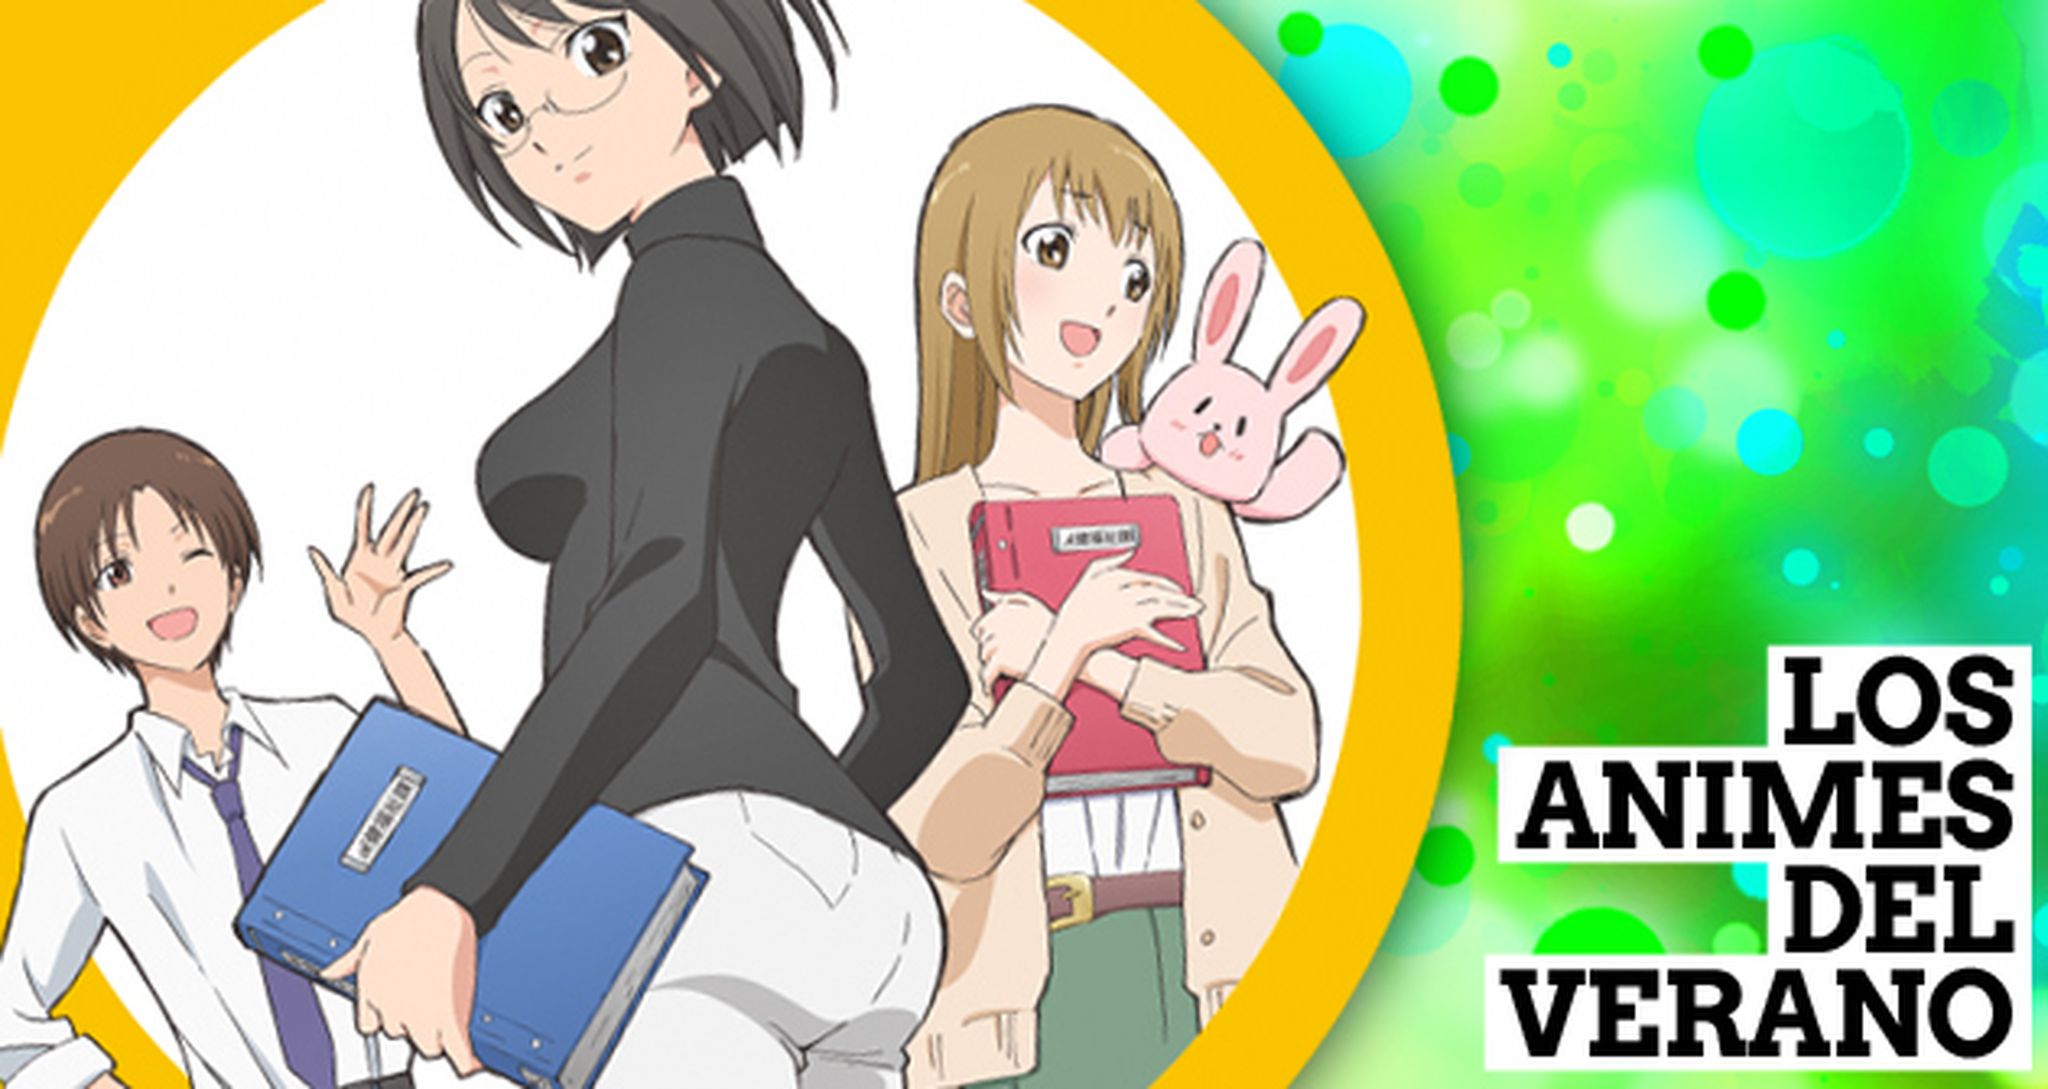 Los mejores estrenos de anime del verano Hobby Consolas